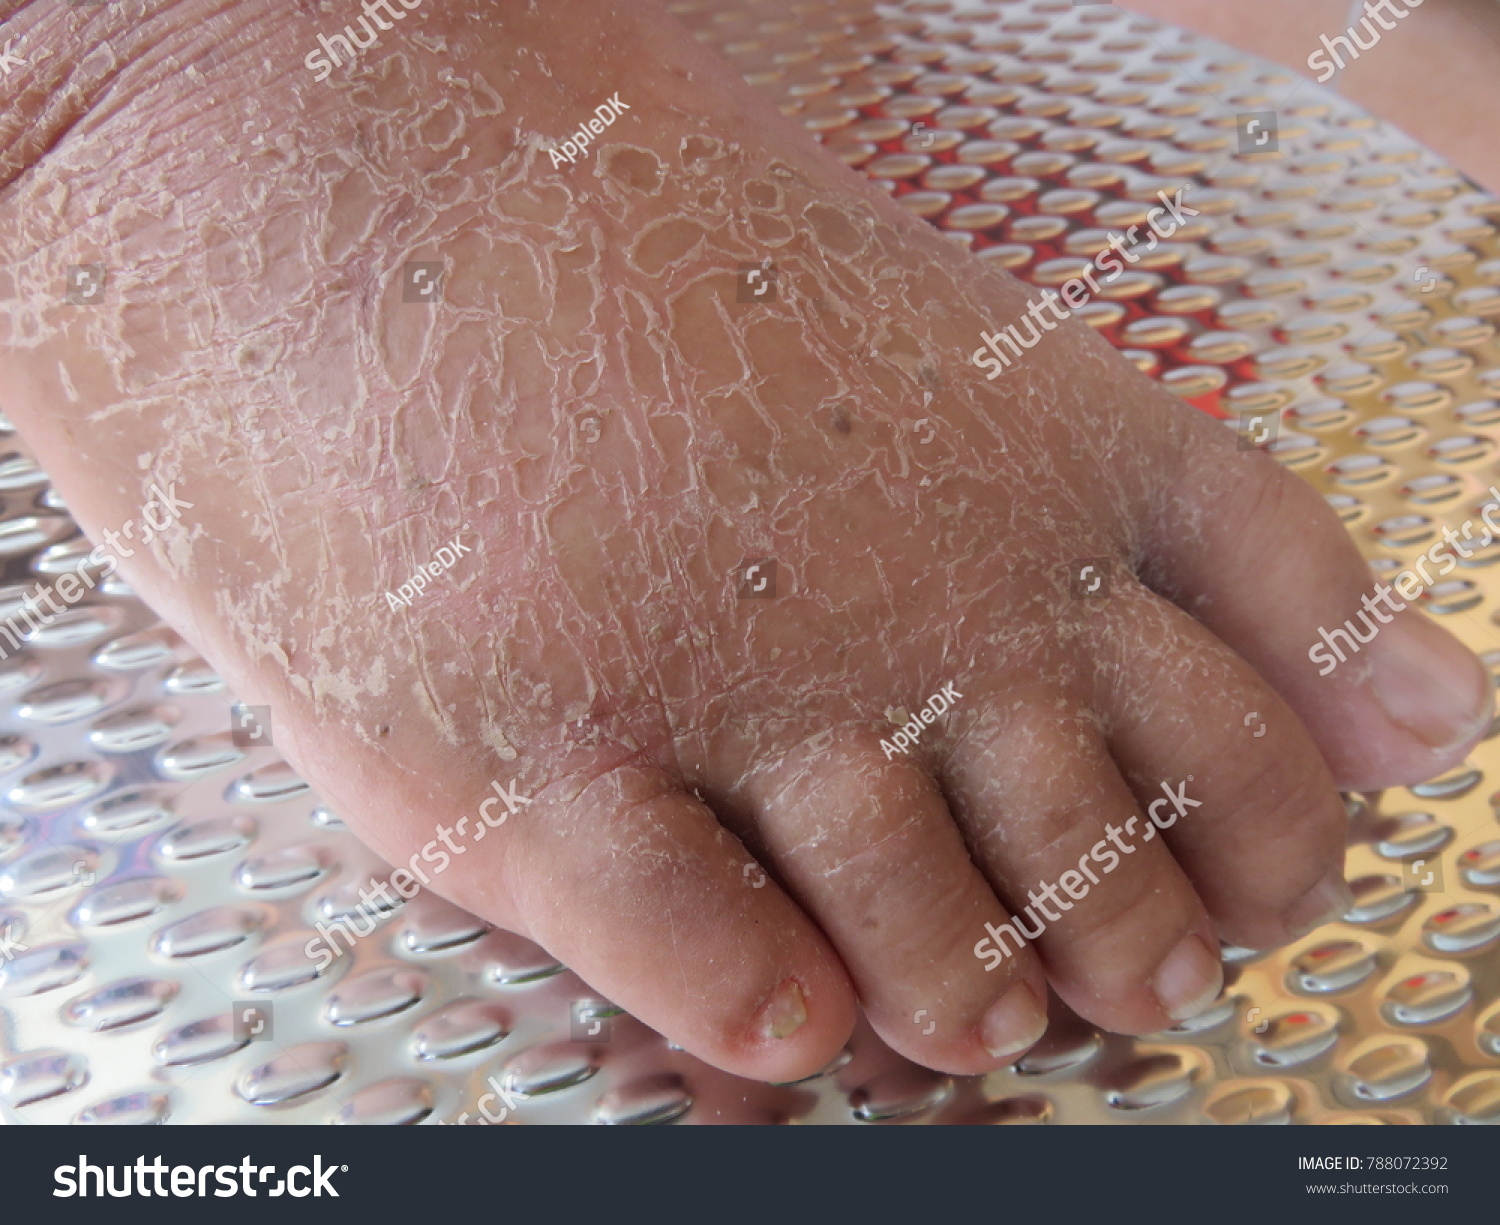 dry feet in winter